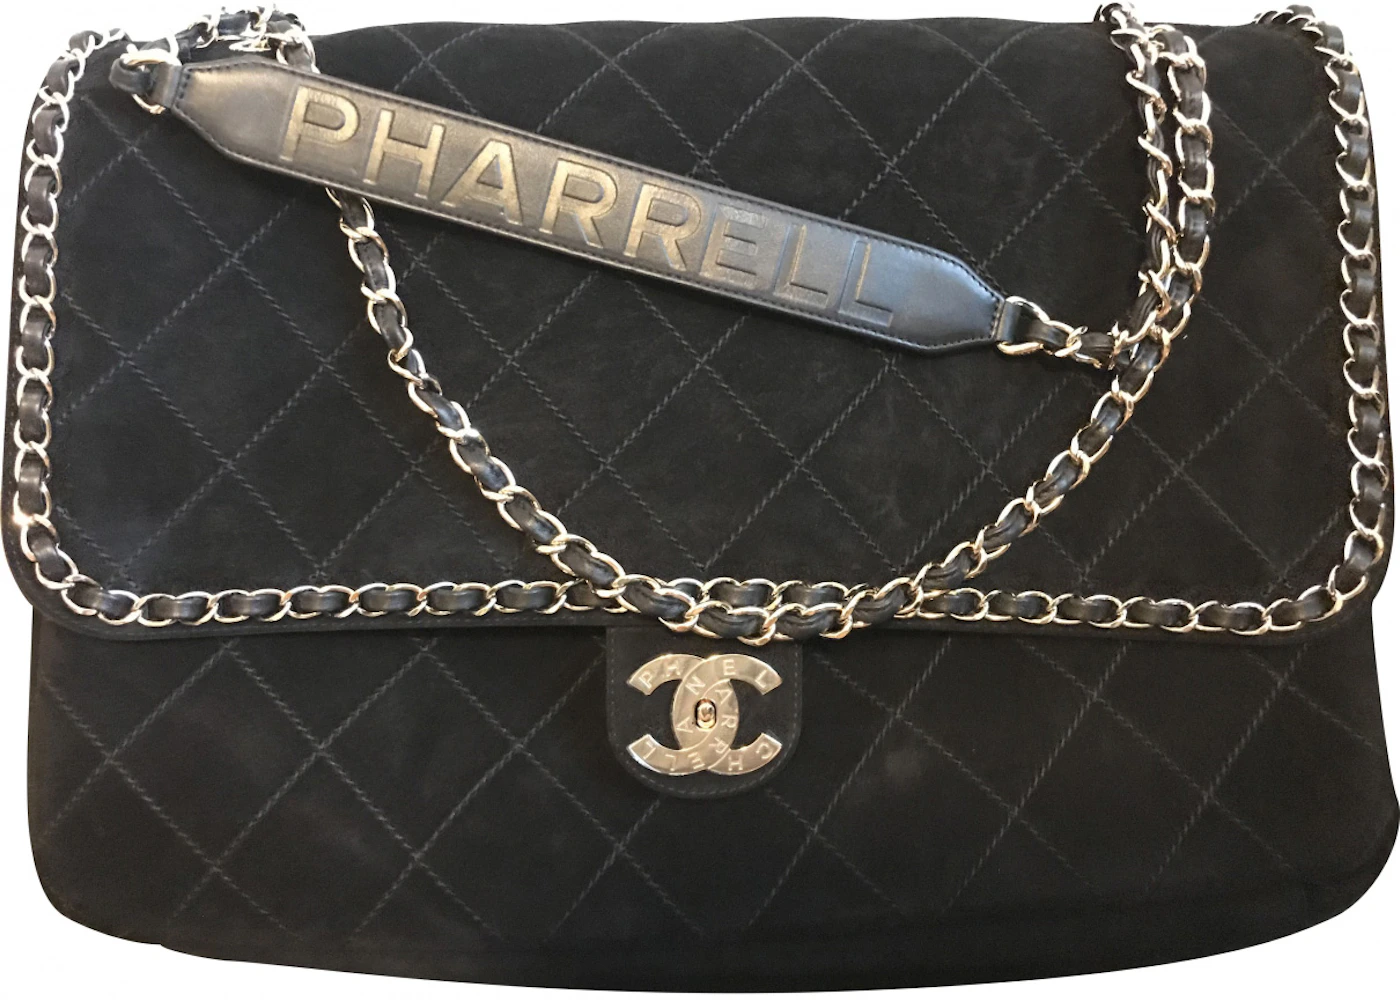 Hetzukoto - Chanel x Pharrell XXL Flap Bag. This XXL flap